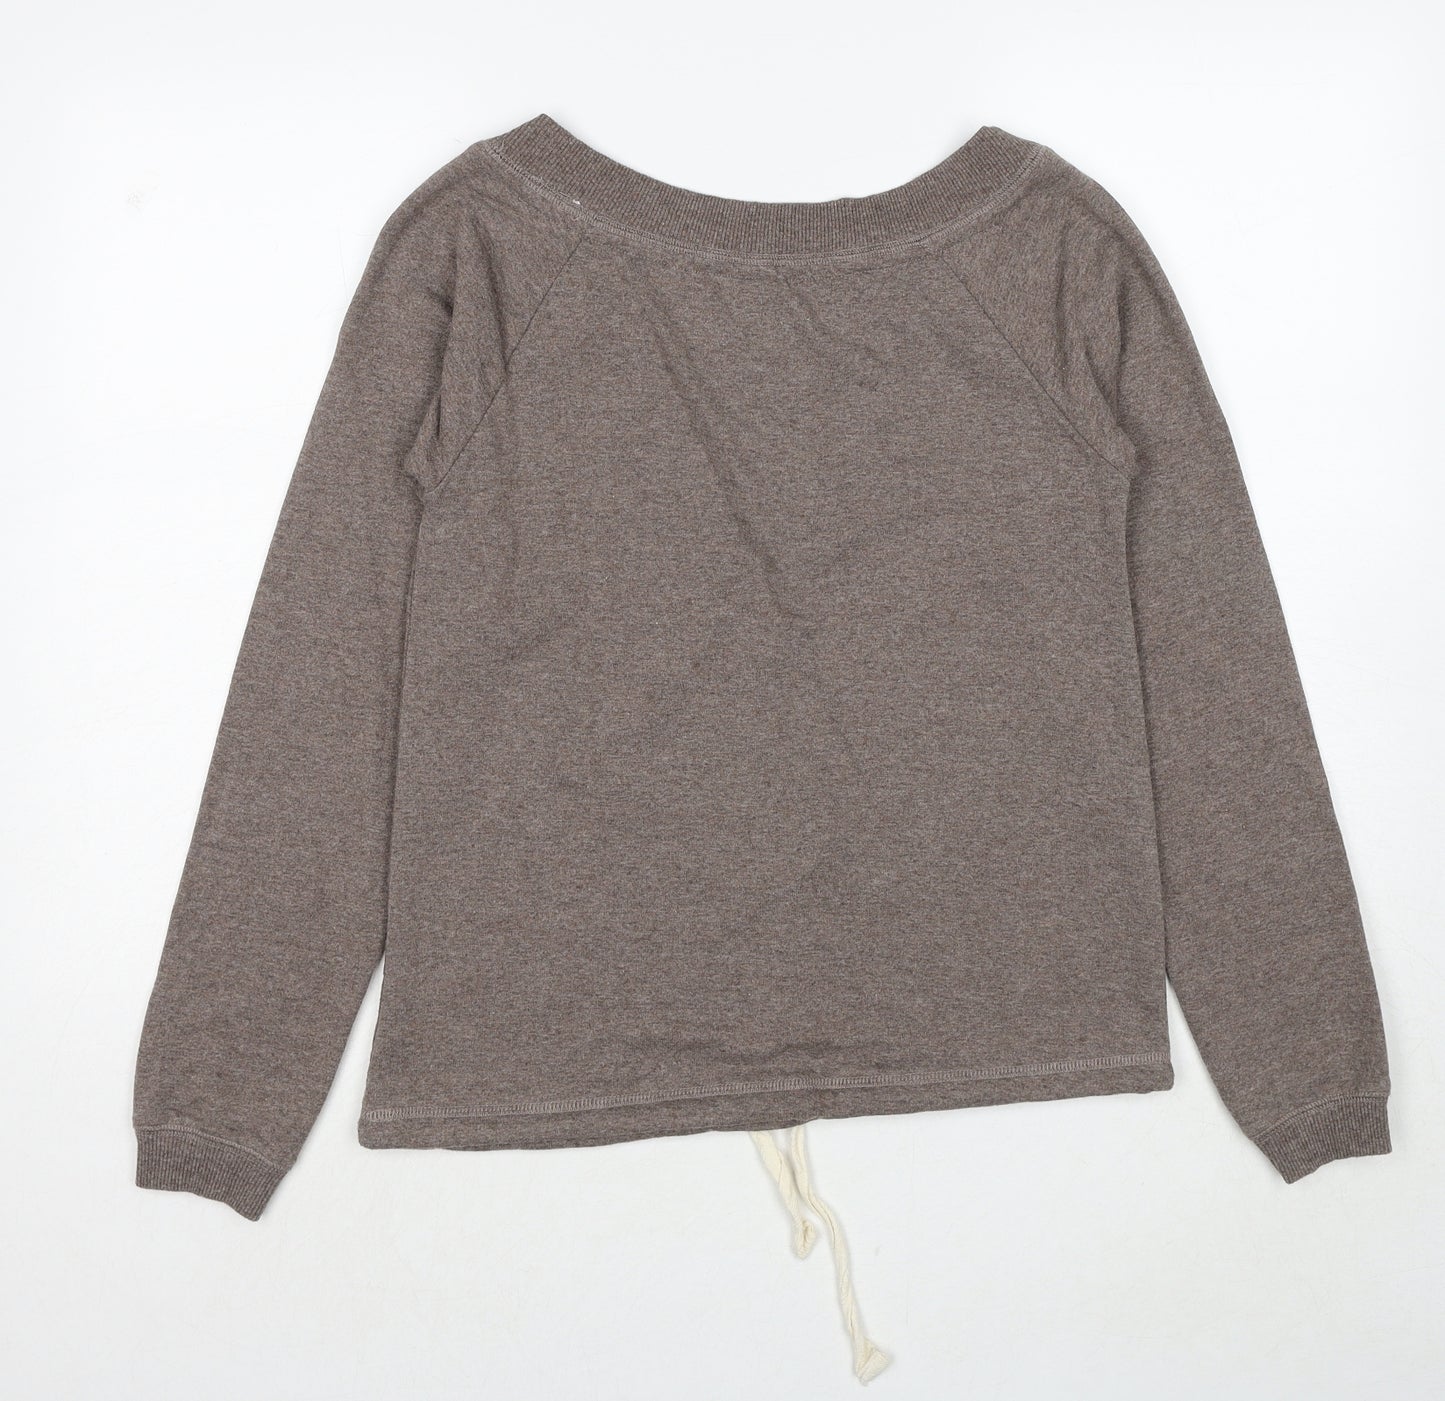 Ethel Austin Womens Beige Cotton Pullover Sweatshirt Size 8 Pullover - Size 8-10